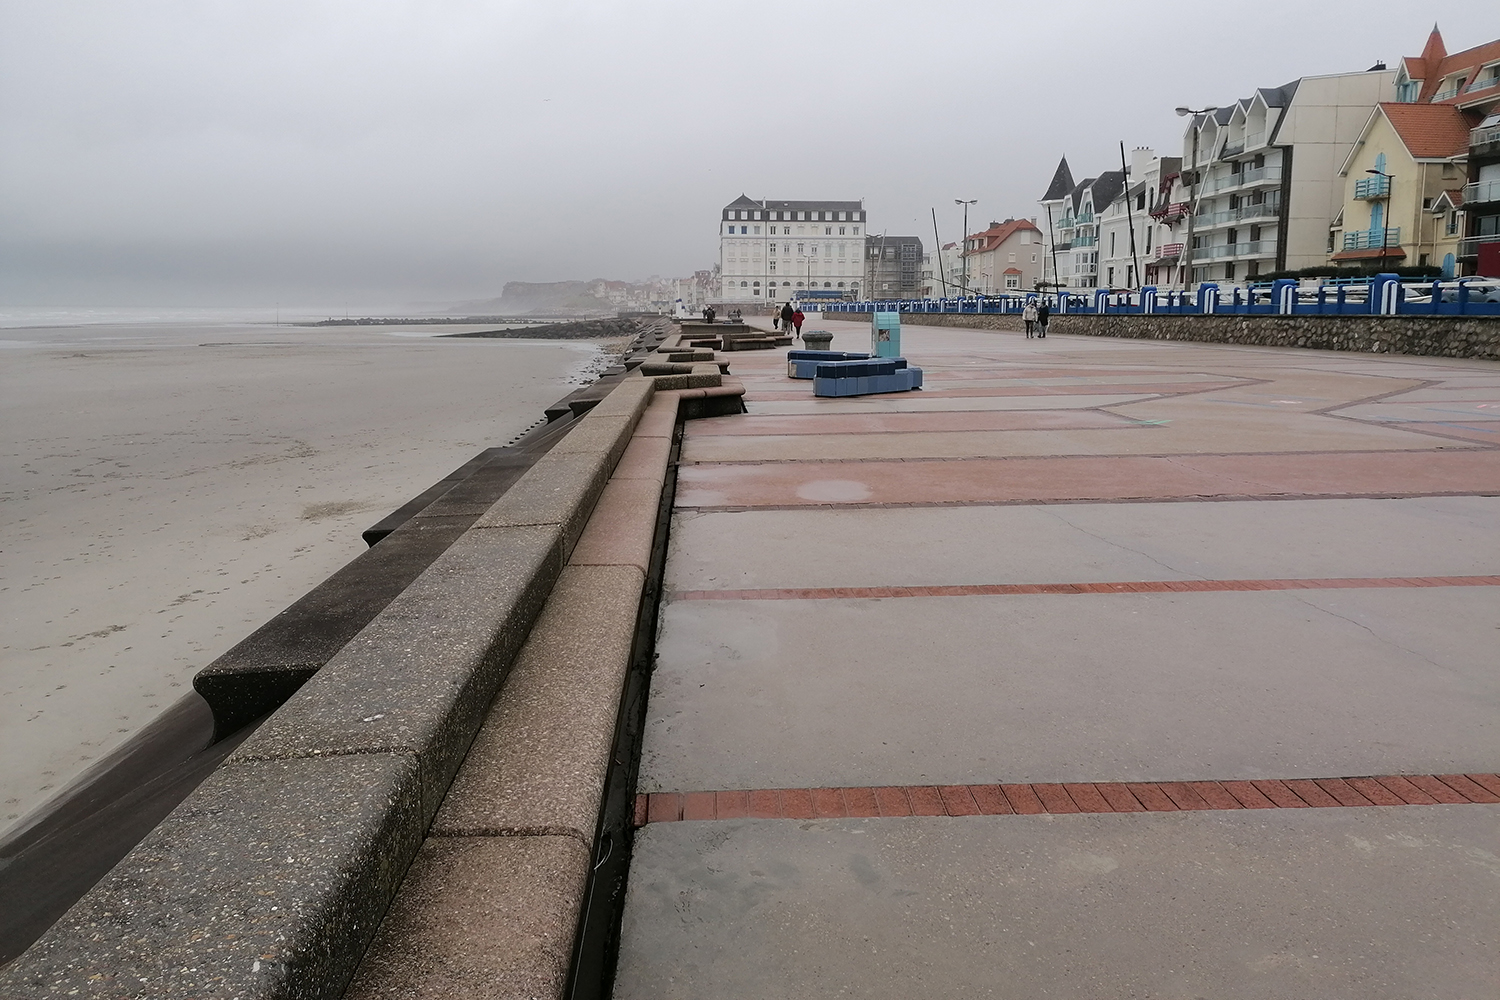 À 2 minutes de la Station Marine se trouvent la digue et la plage de Wimereux, une petite station balnéaire située au Nord de Boulogne-sur-Mer © Globe Reporters